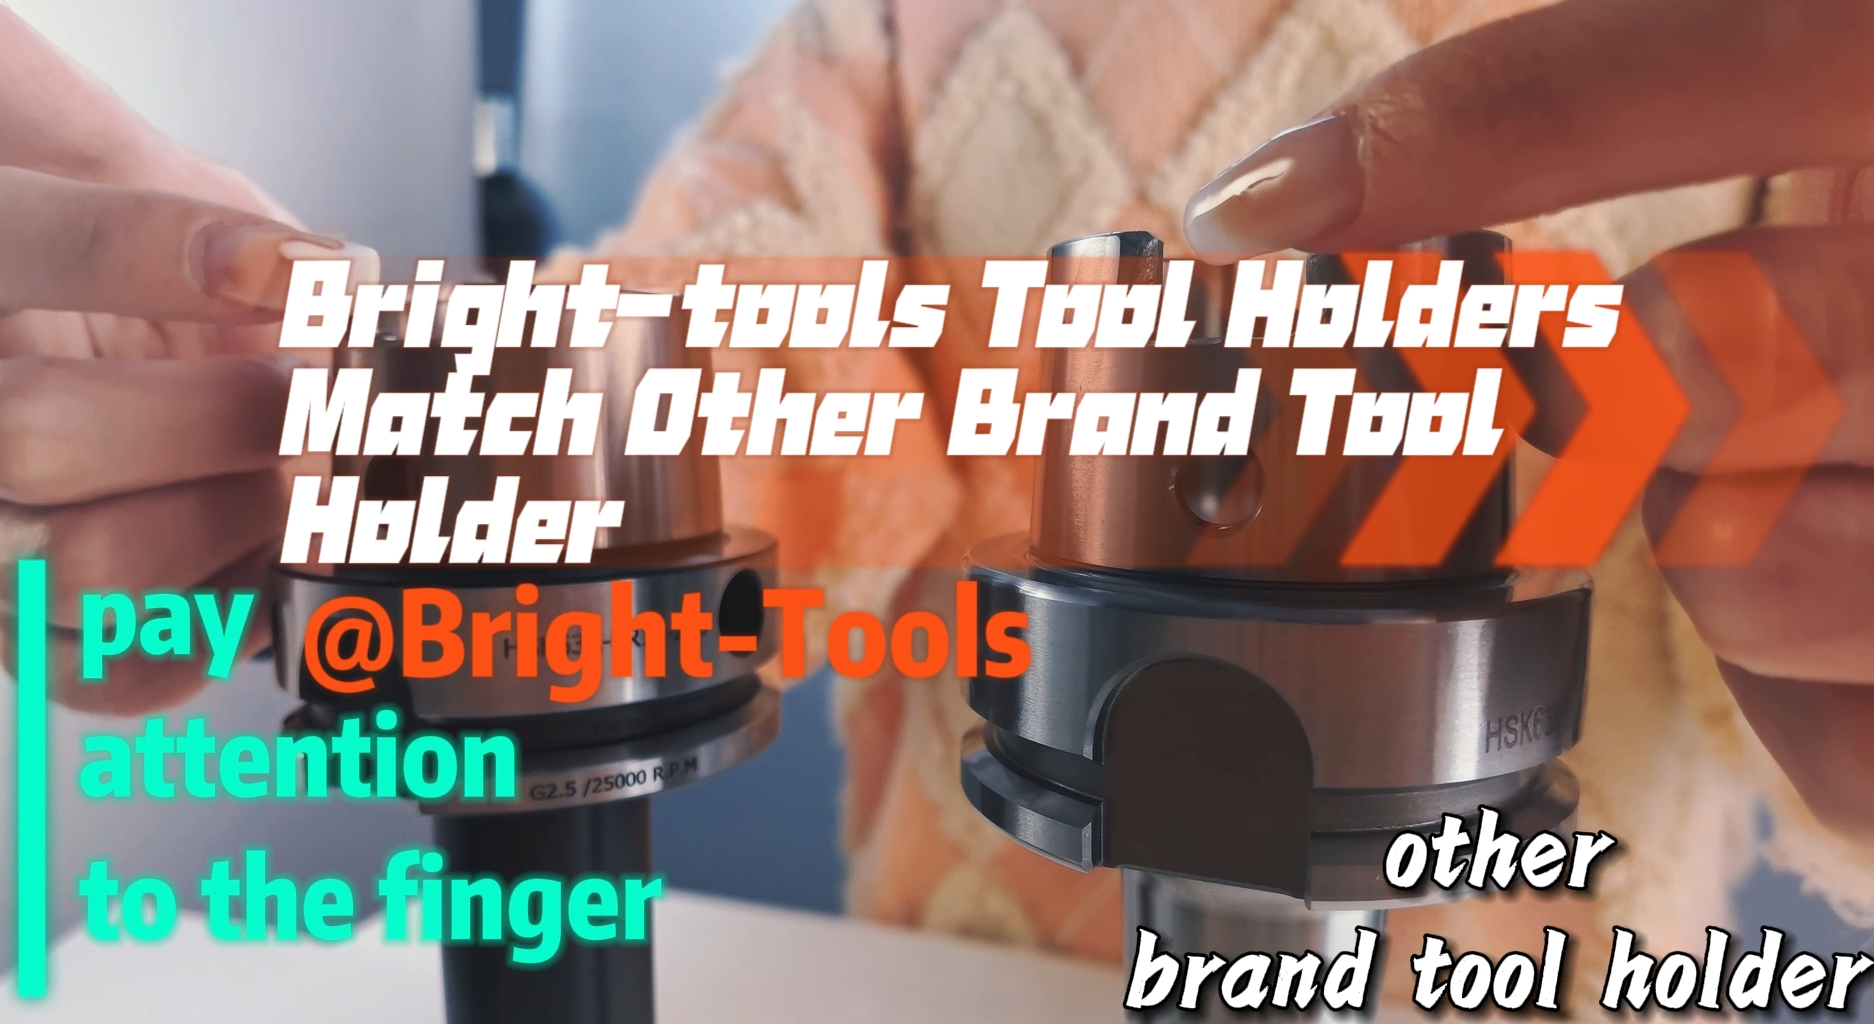 明るいツールホルダーは他のブランドのツールホルダーと一致します